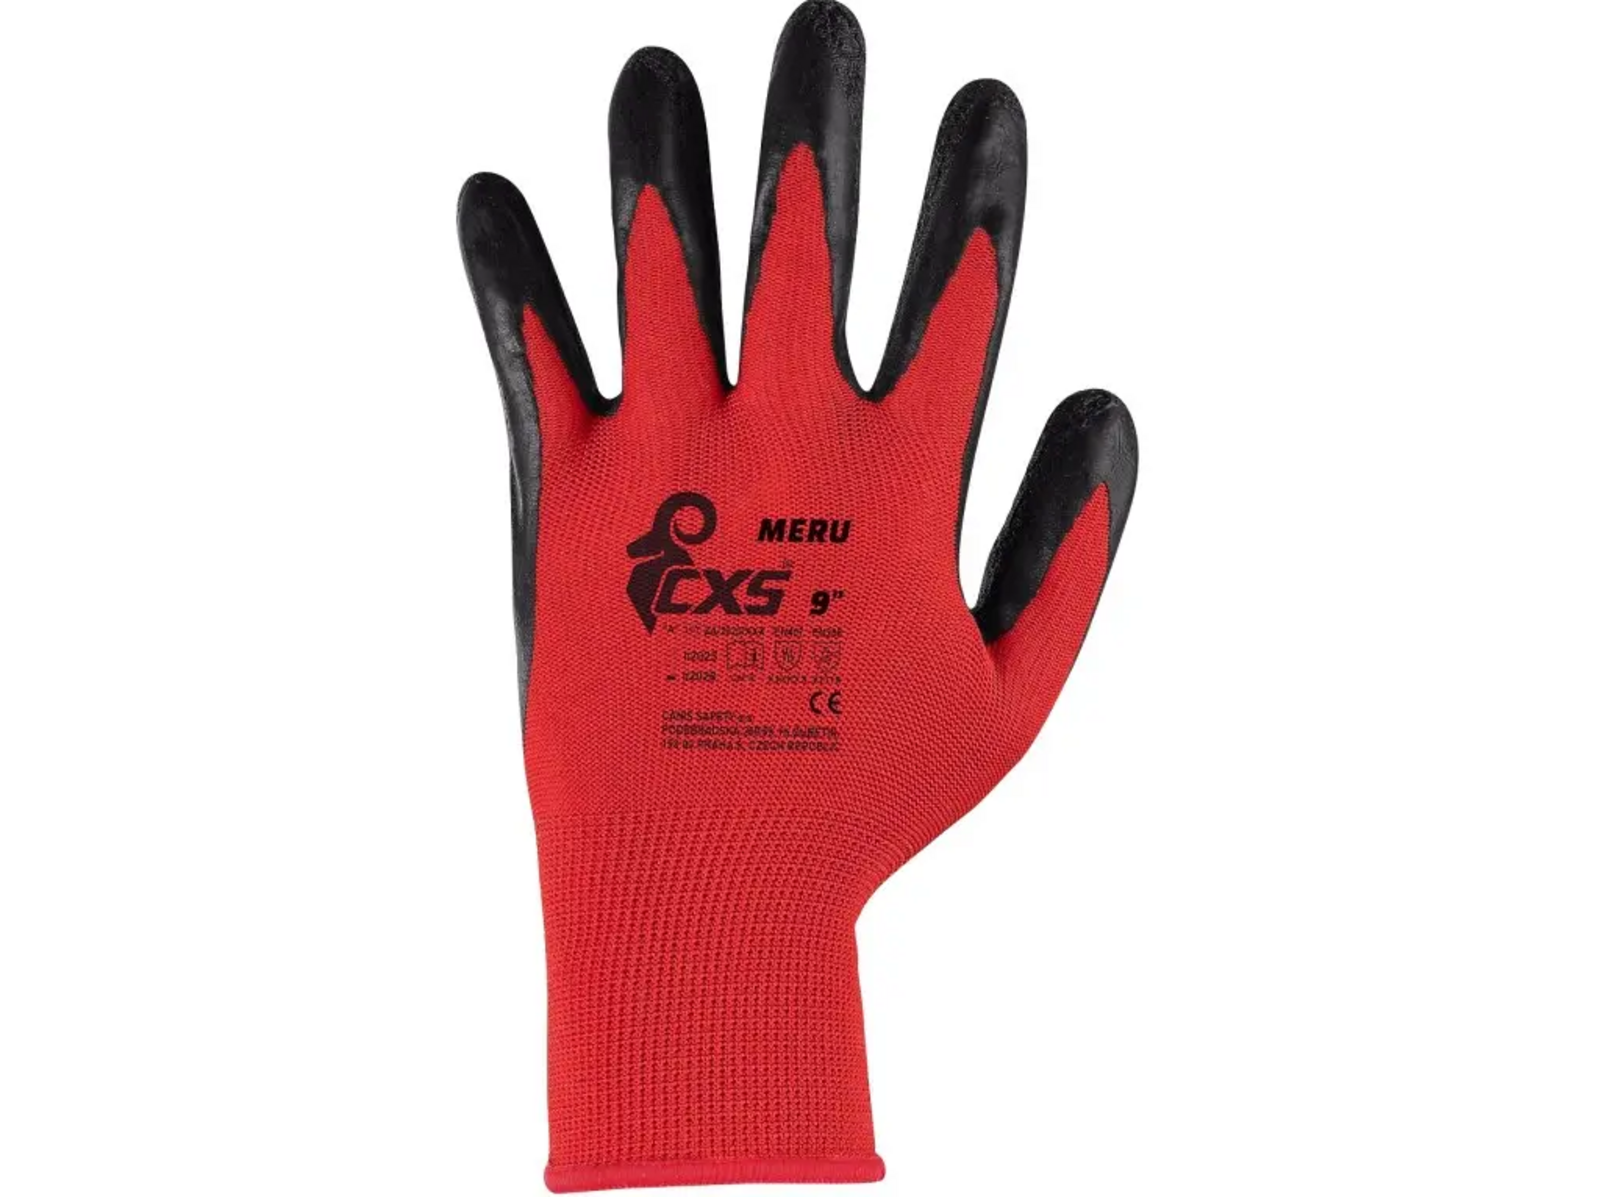 Povrstvené rukavice CXS Meru - veľkosť: 9/L, farba: červená/čierna